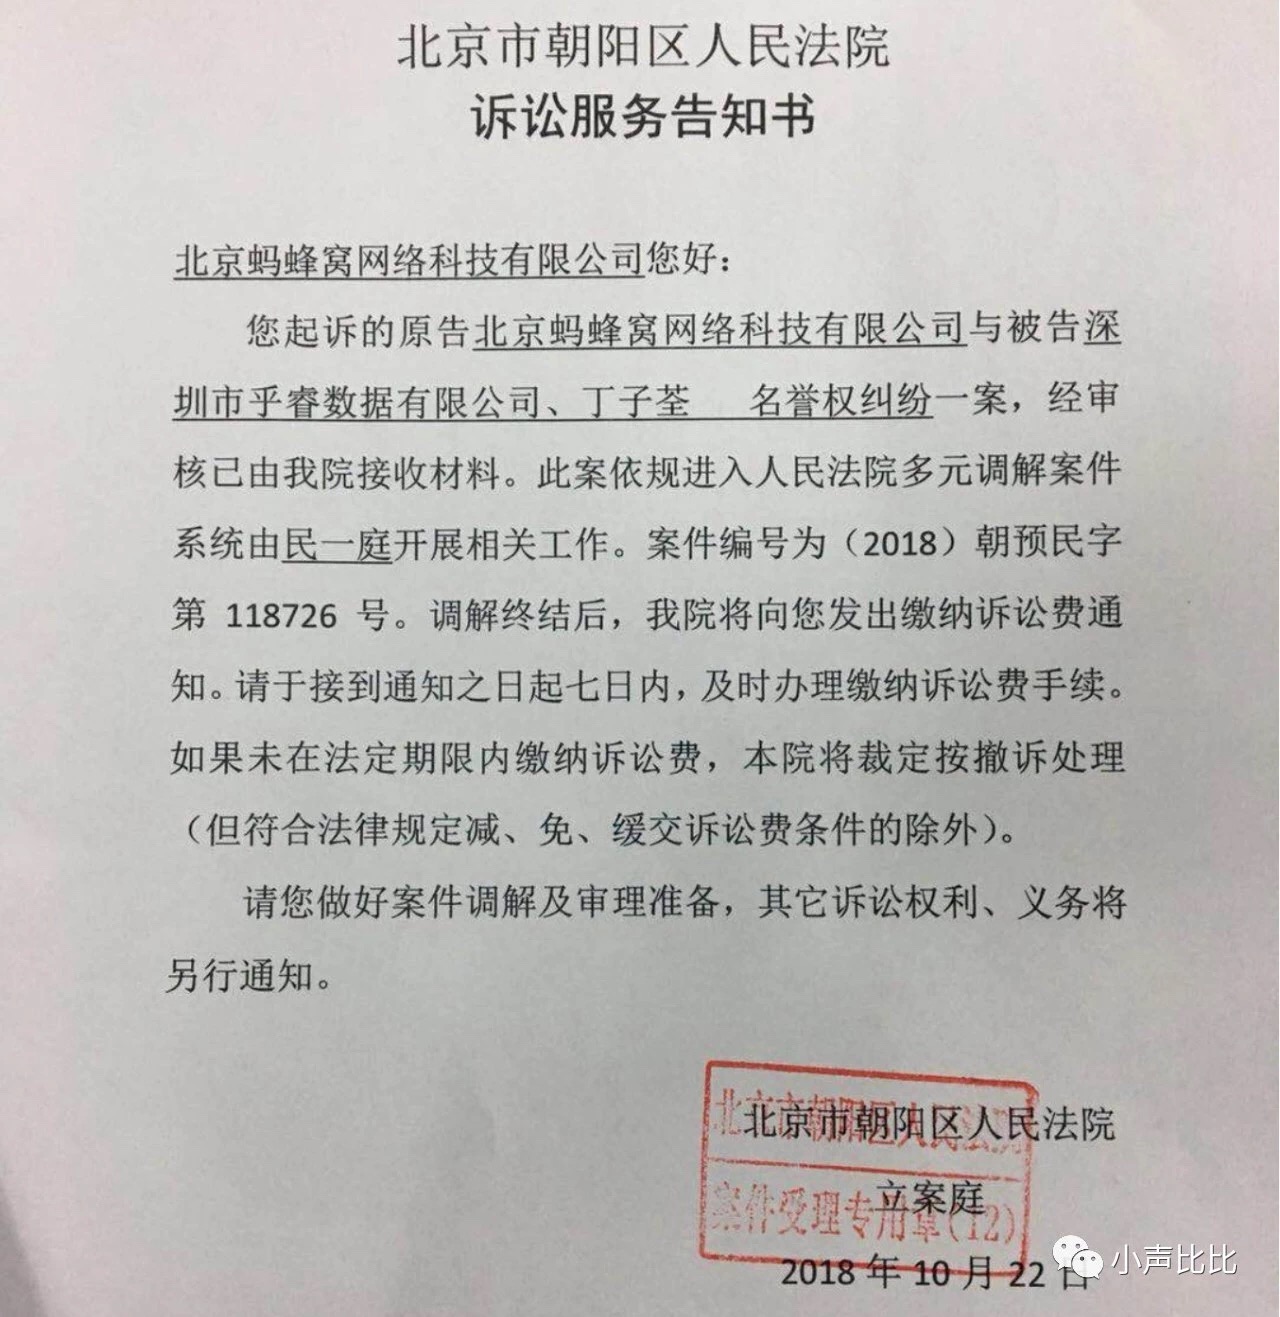 根据梓泉提供的北京市朝阳区人民法院诉讼服务告知书显示,朝阳区